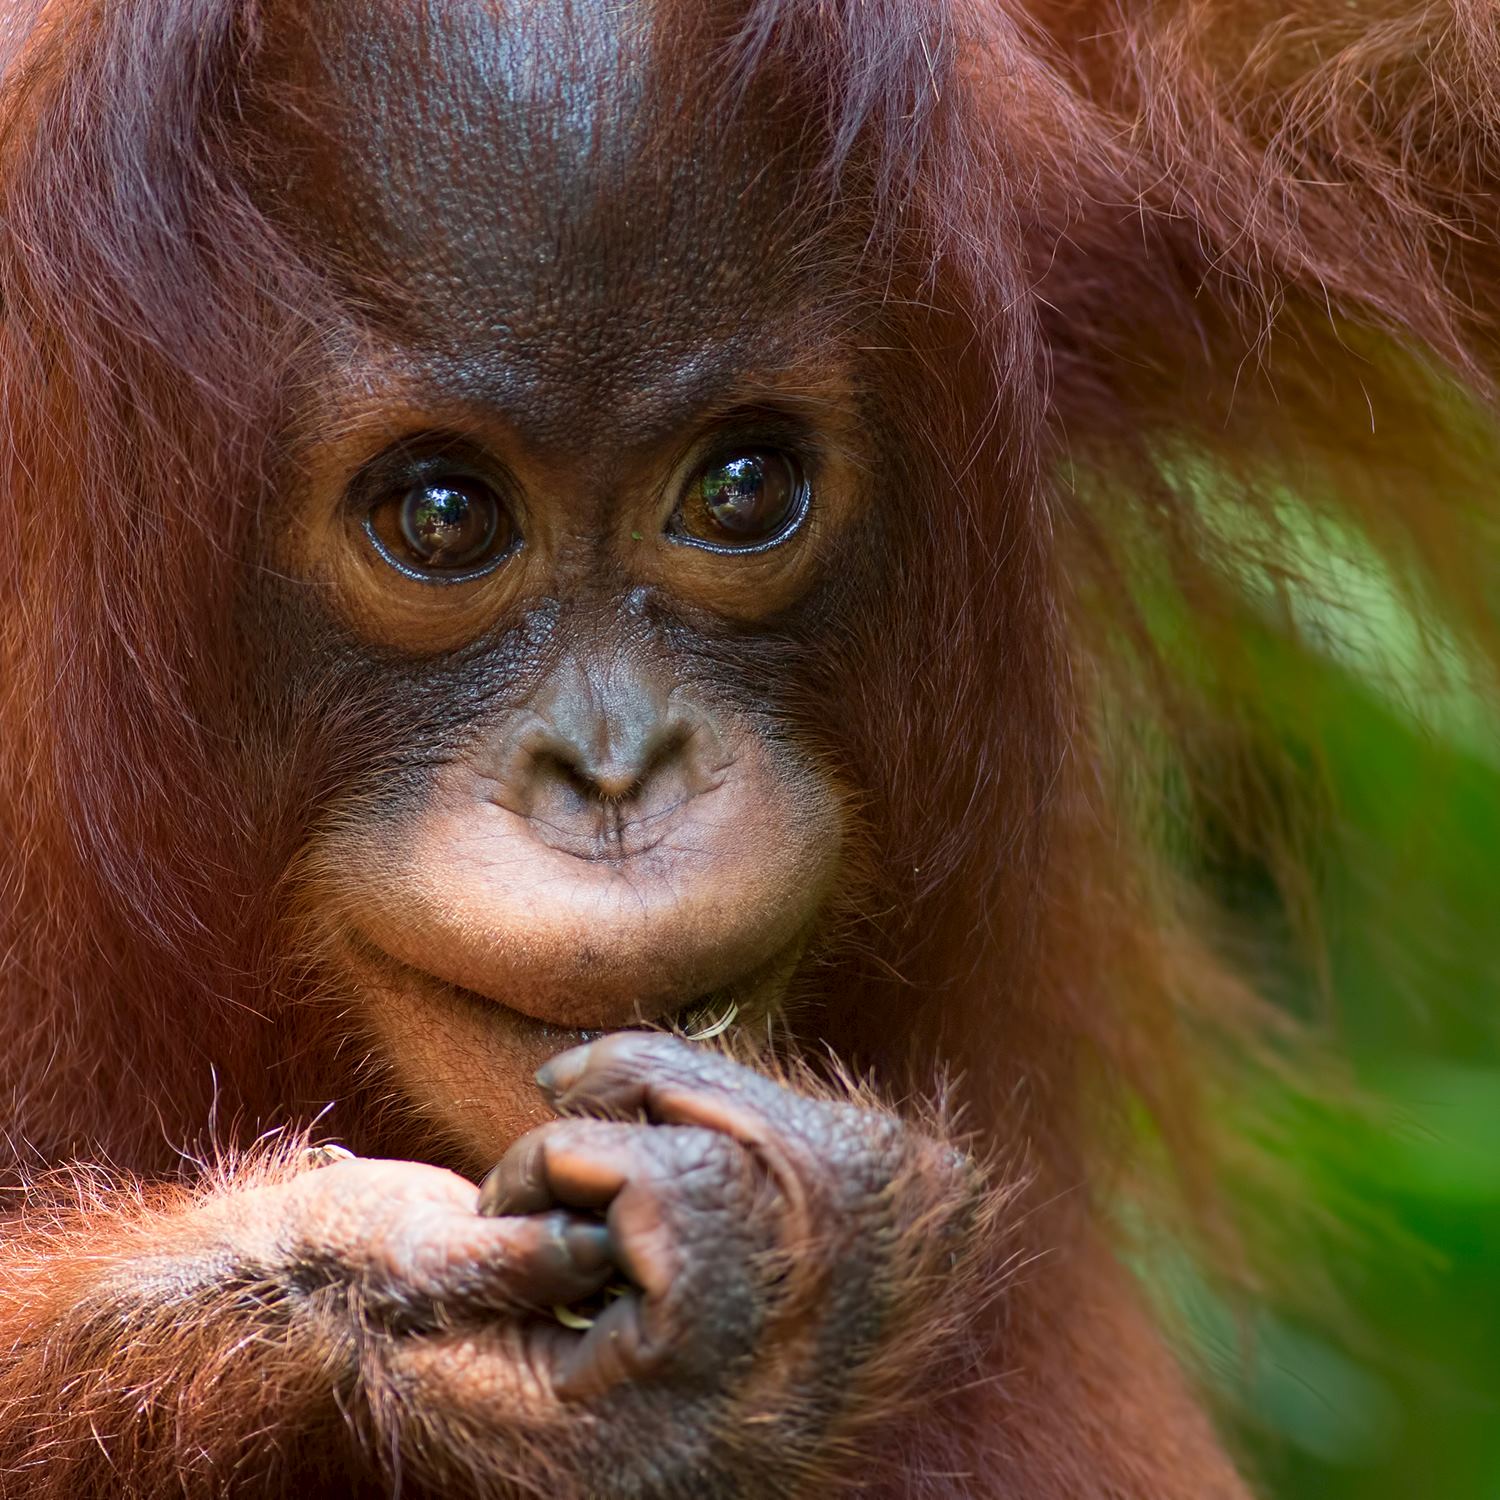 Baby orangutan at Sepilok